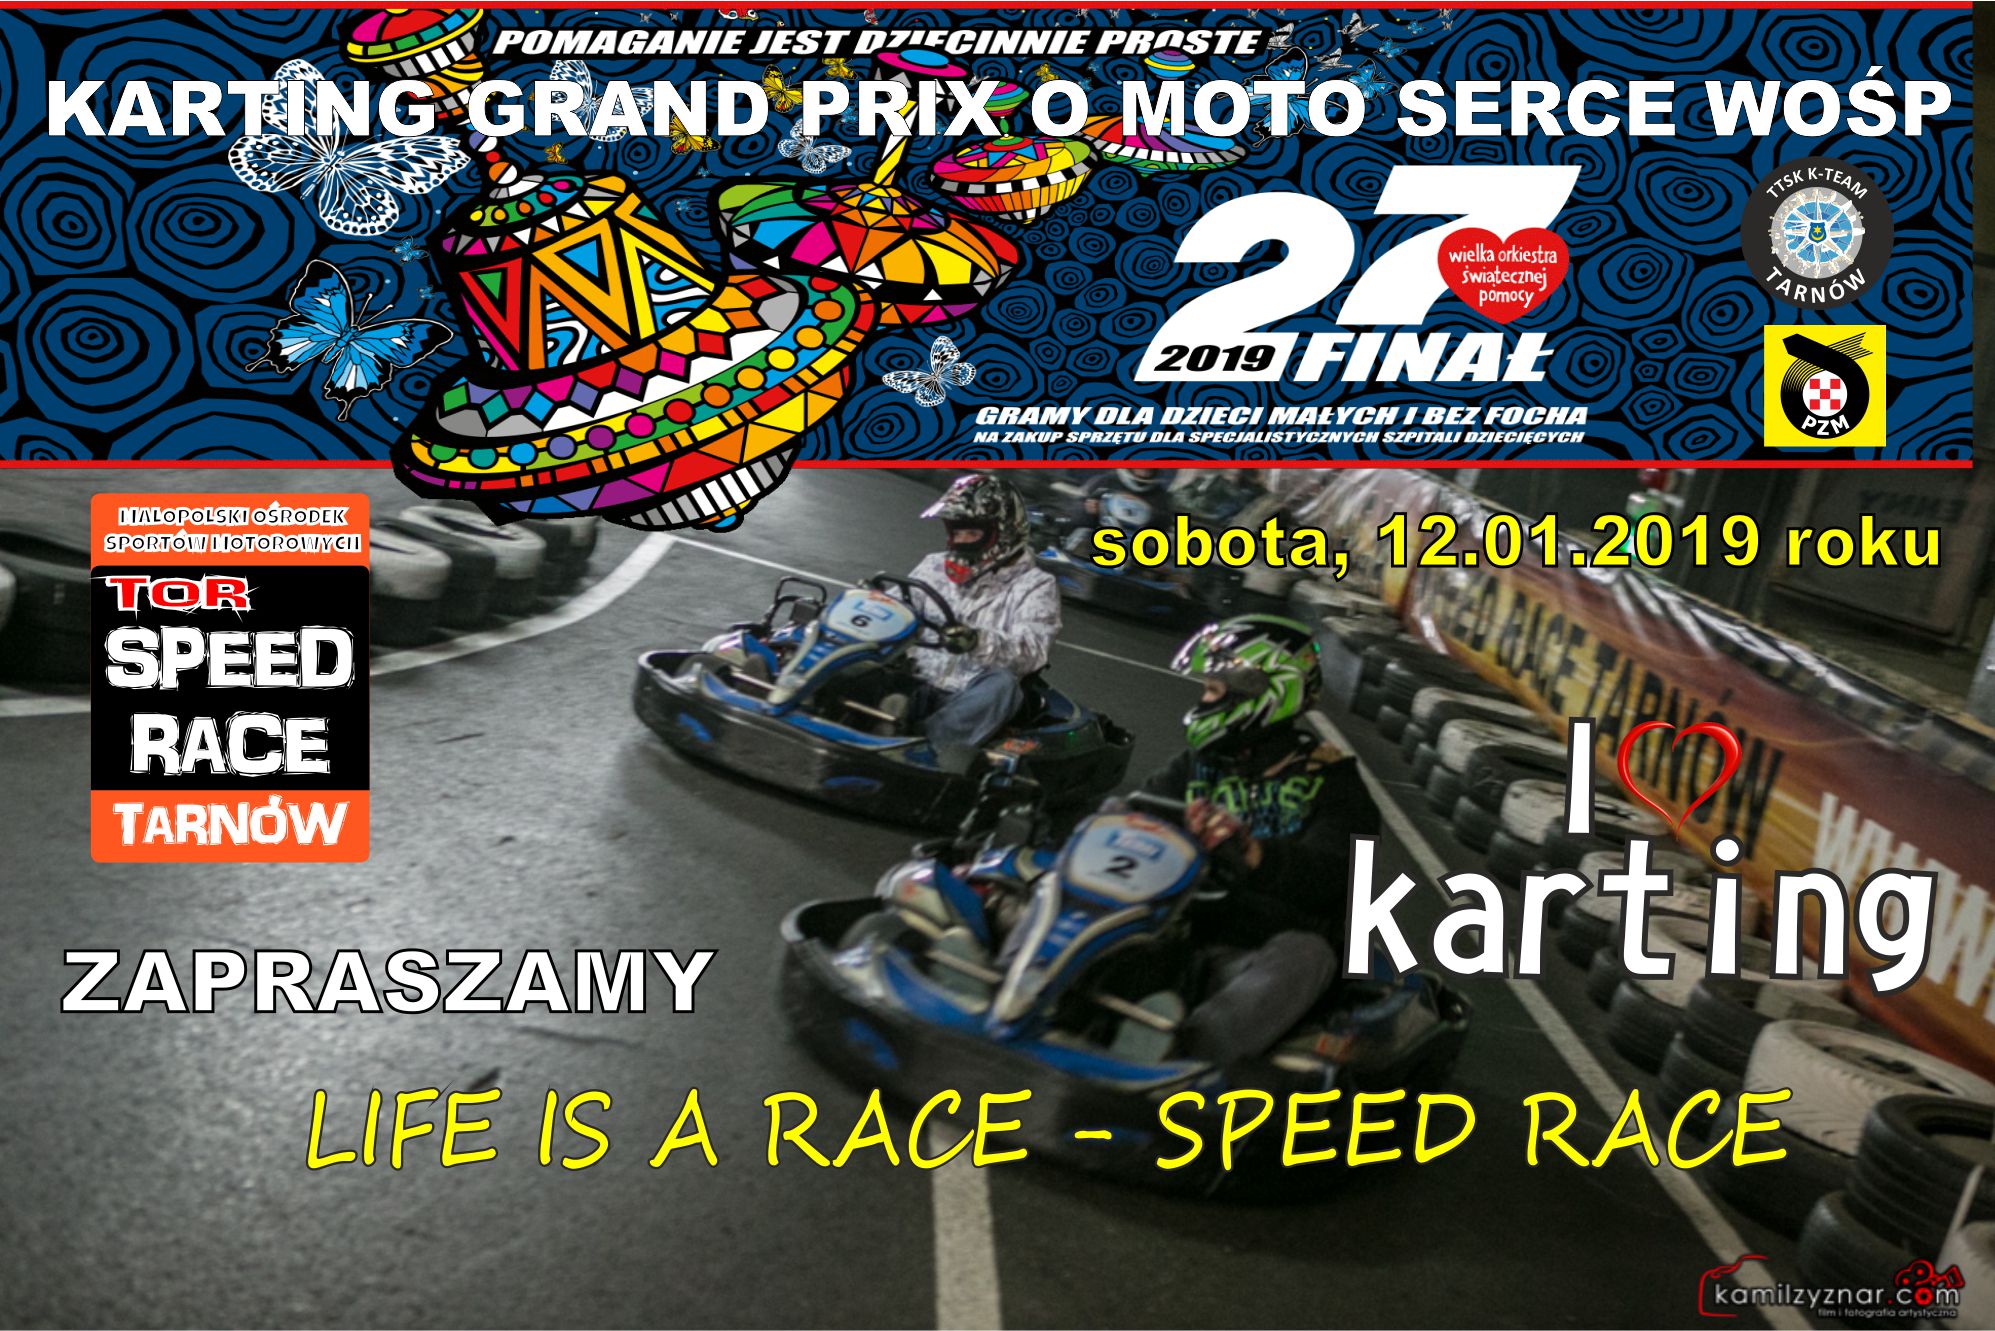 Karting Grand Prix o Moto Serce WOŚP 2019.jpg